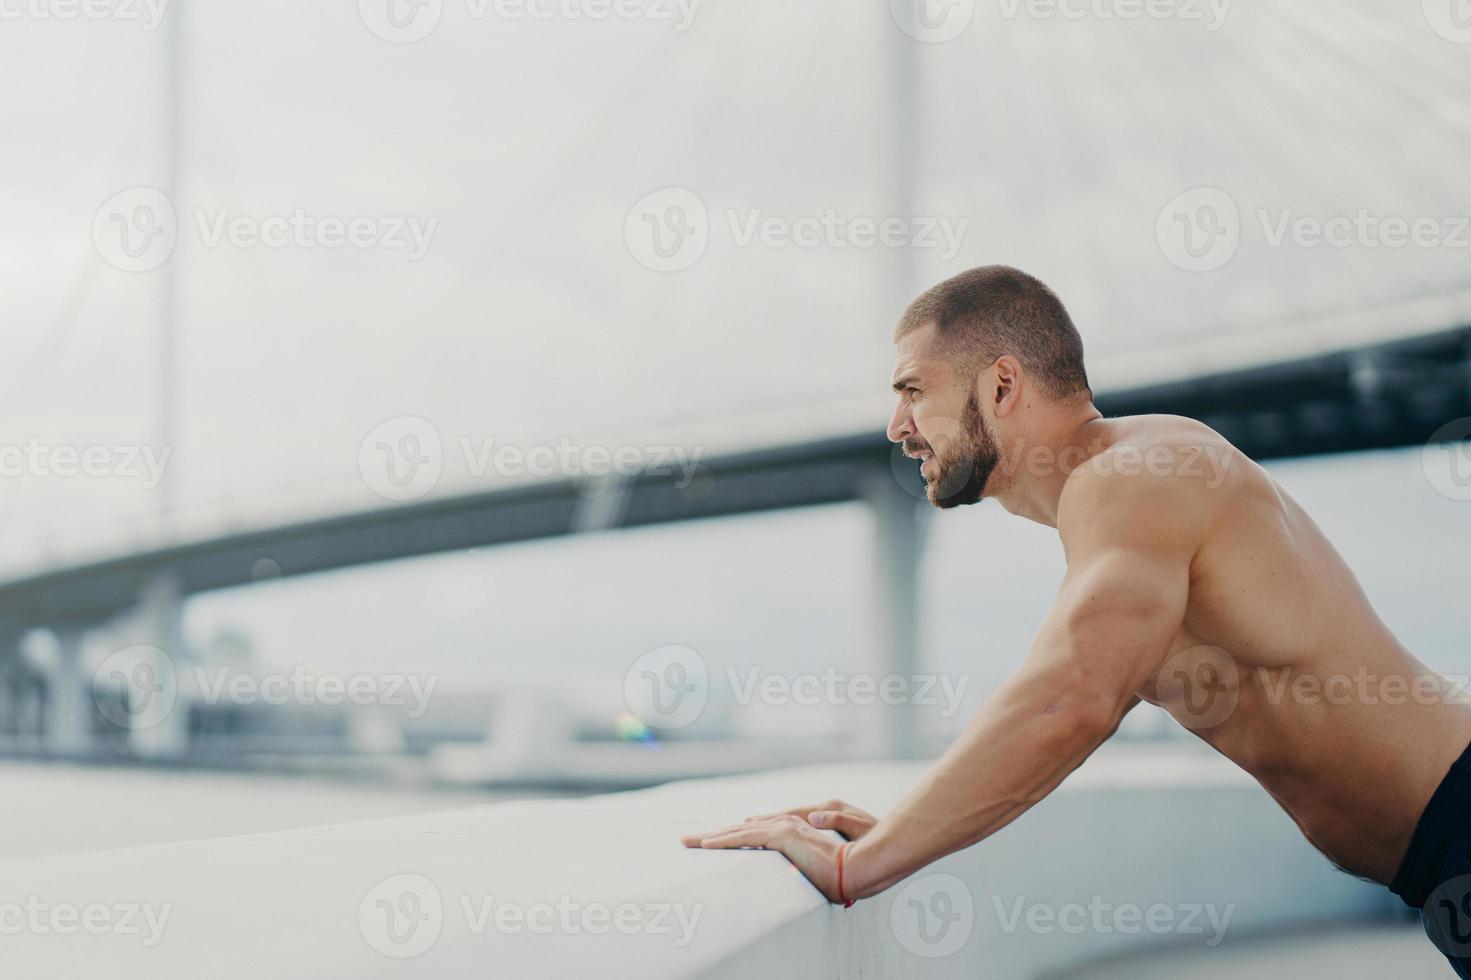 gemotiveerde mannelijke sportman doet push-up oefening poses buiten bij brug geconcentreerd in afstand heeft ochtendtraining naakte gespierde torso opwarmt voordat joggen. gezond levensstijlconcept. foto